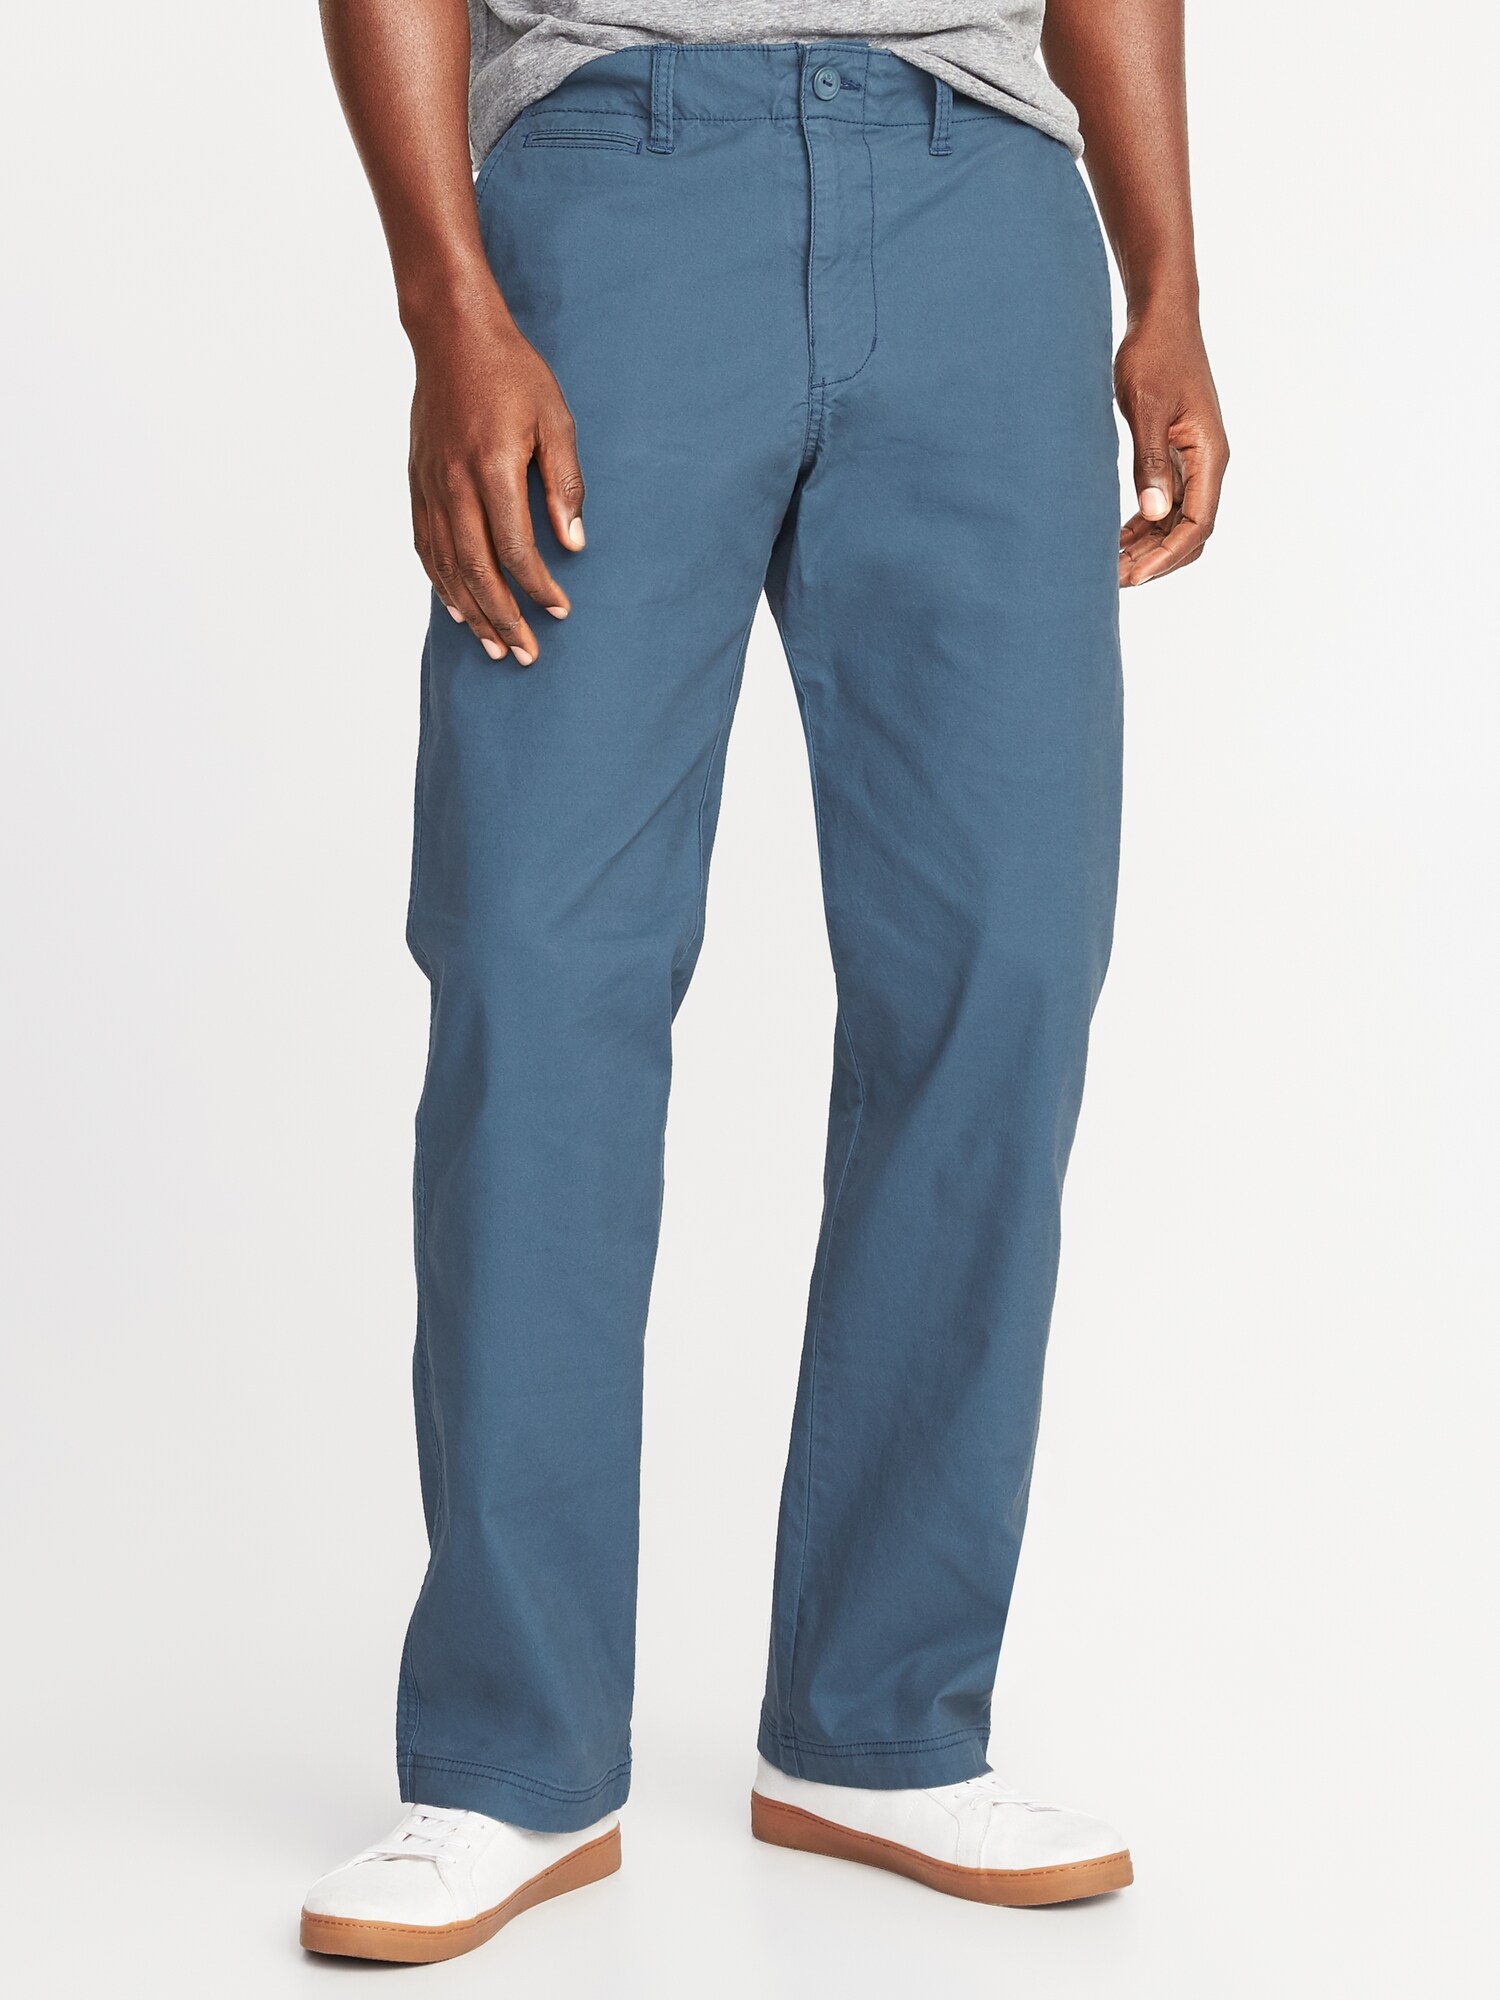 Loose Lived-In Built-In Flex Khaki Pants for Men